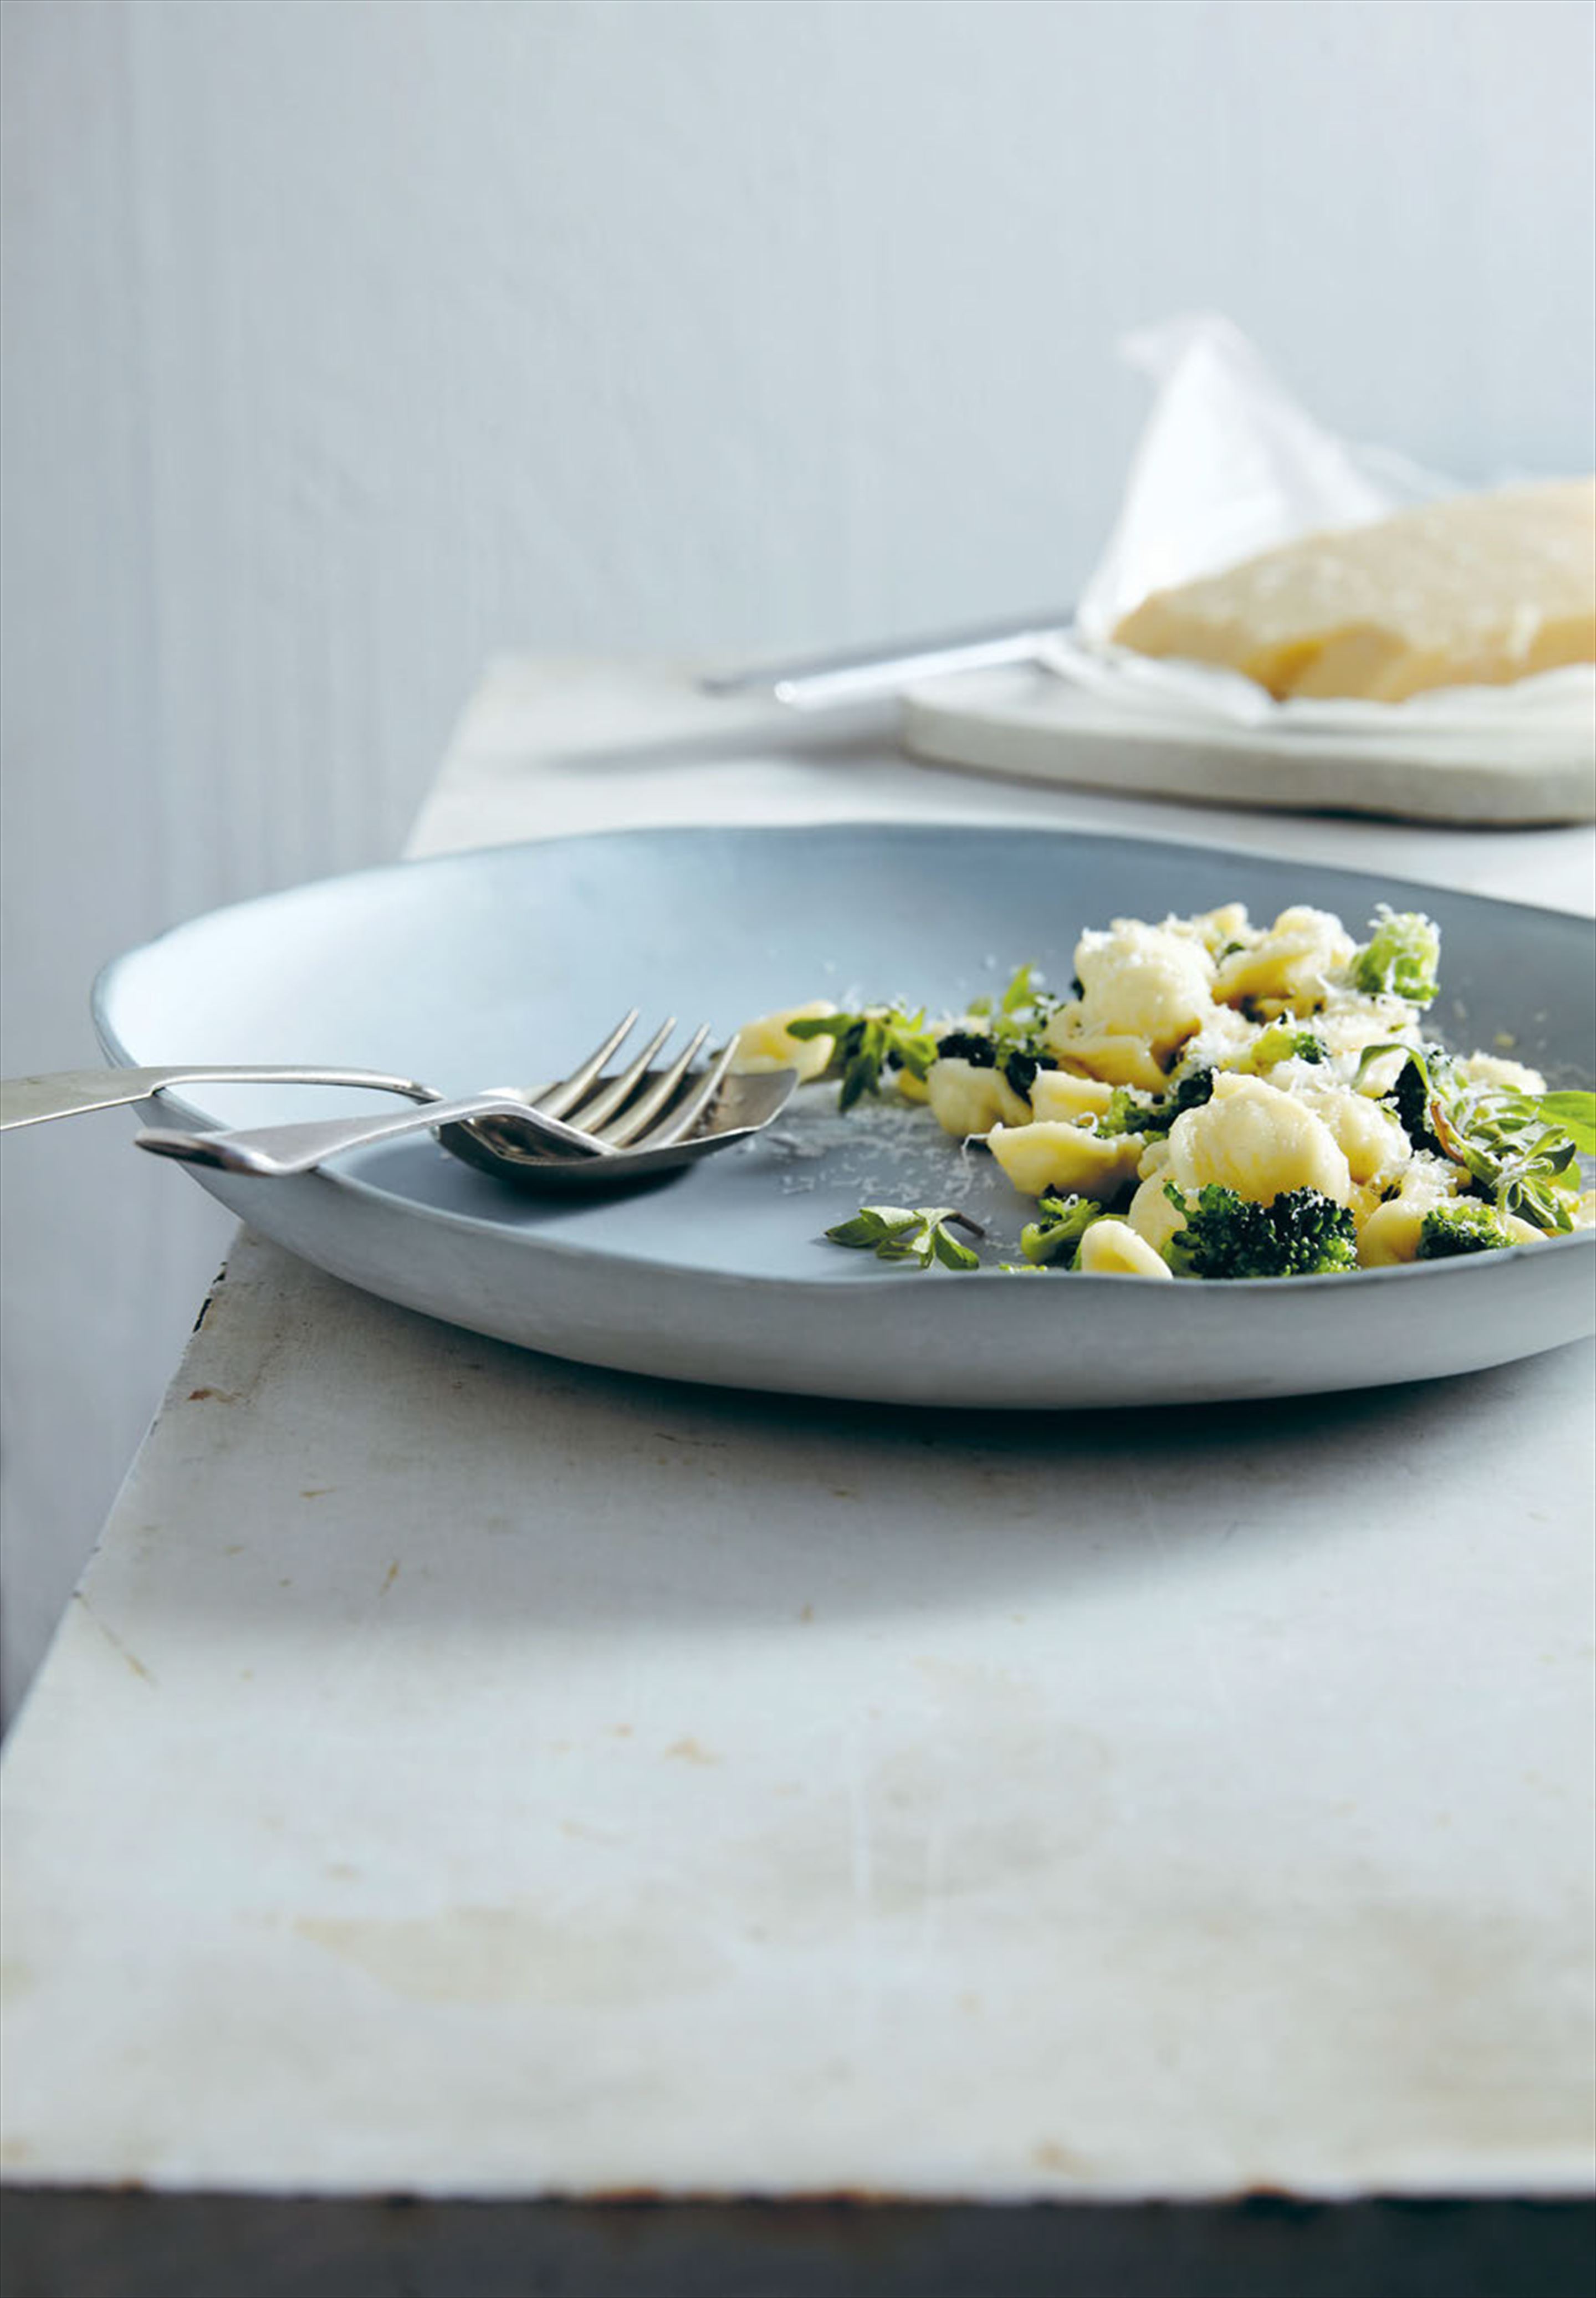 Orecchiette with broccoli